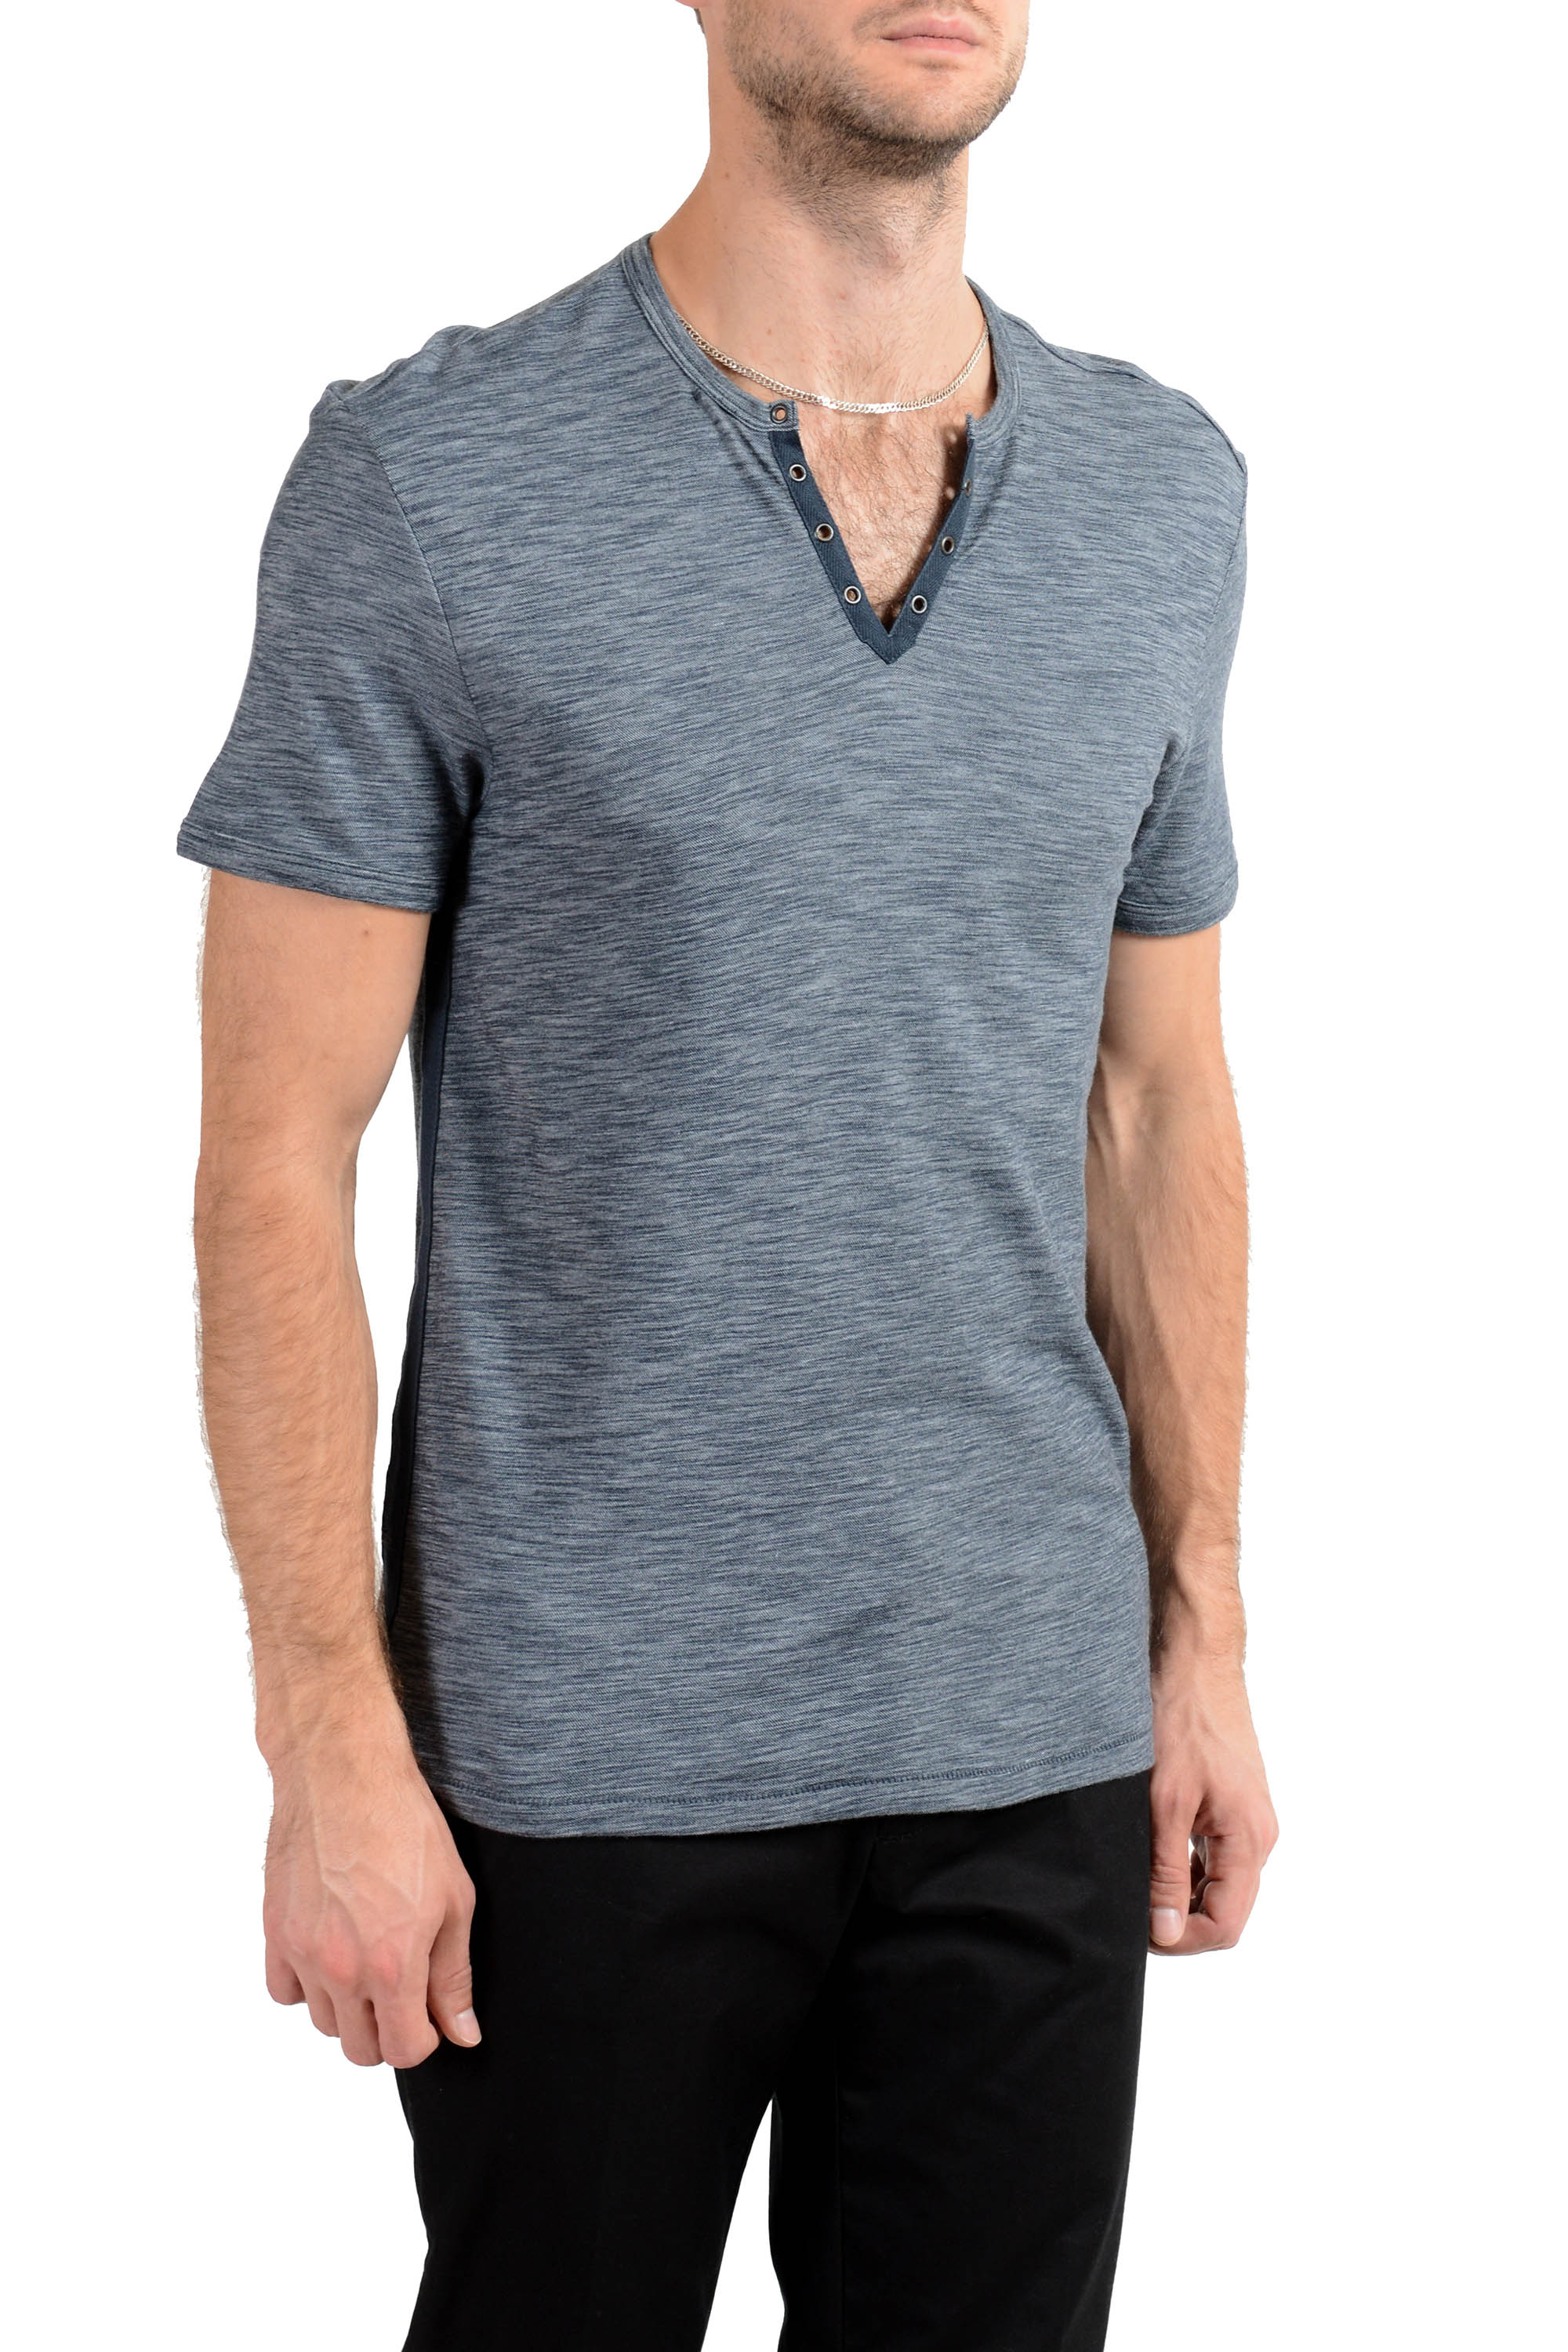 Details about   John Varvatos Star USA Men's Ocean Blue Modal Short Sleeve Henley Shirt